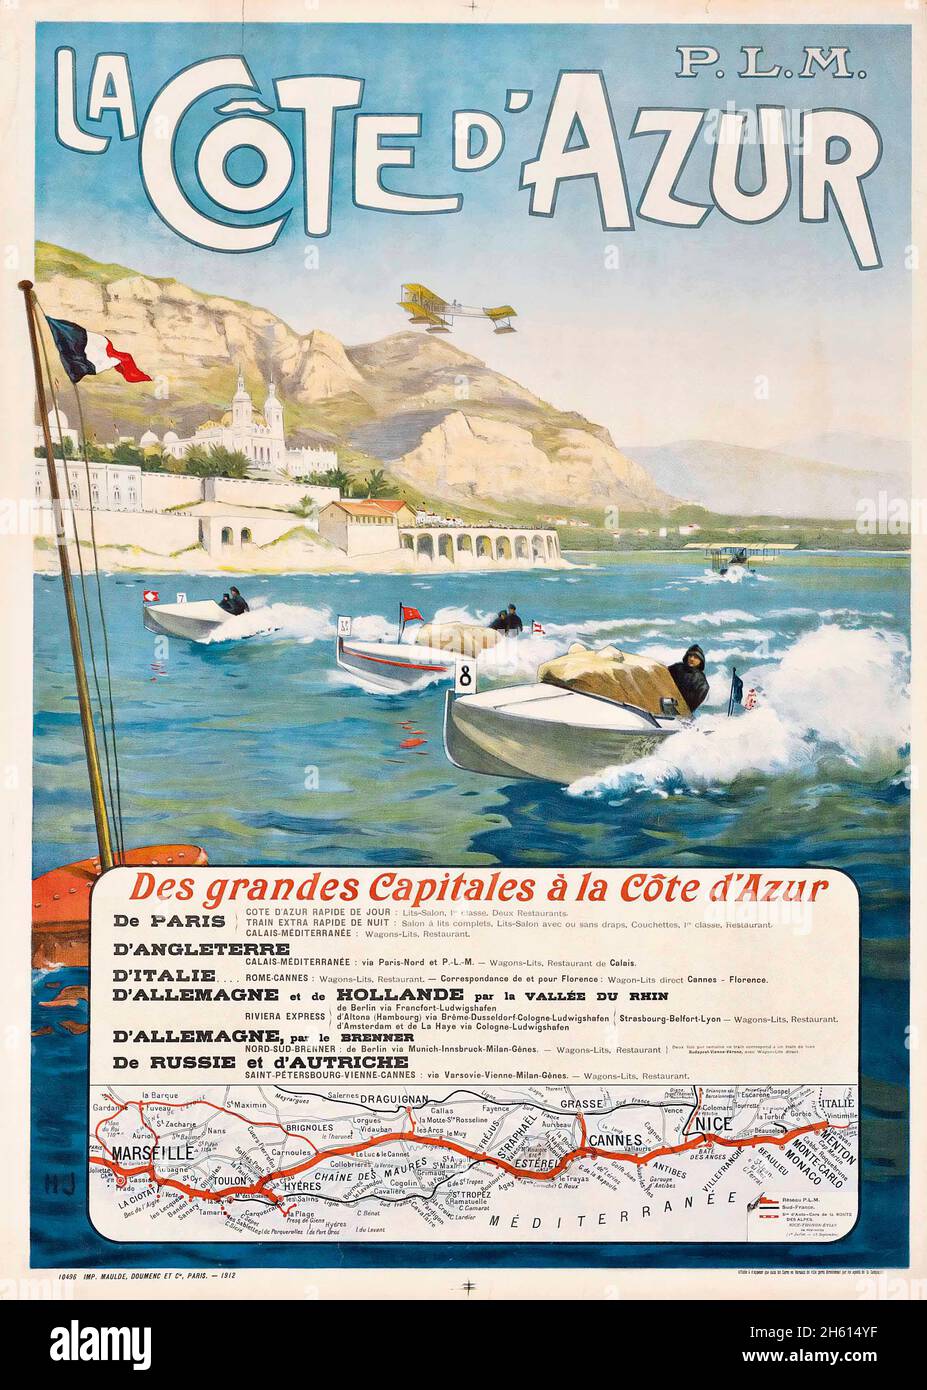 H. J. - LA COTE D'AZUR 1912 - Des Grandes Capitales a la Cote d'Azur. French Riviera. Stock Photo